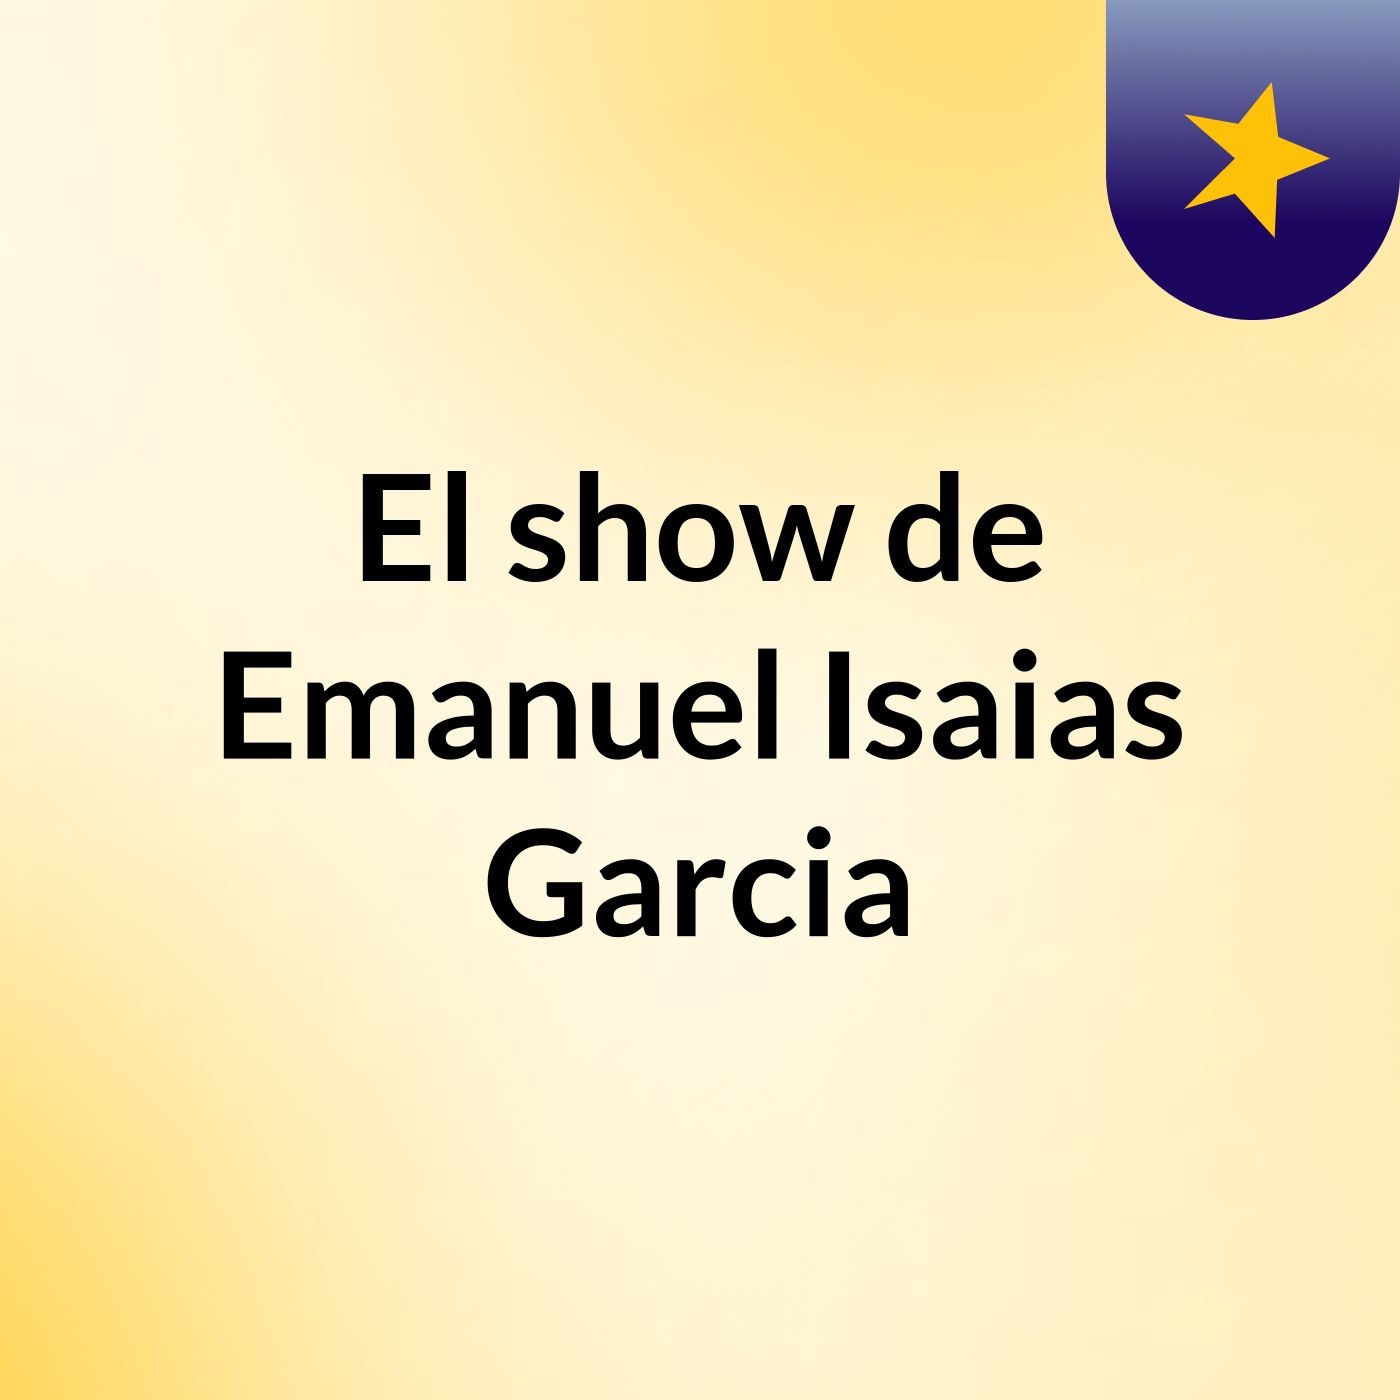 El show de Emanuel Isaias Garcia